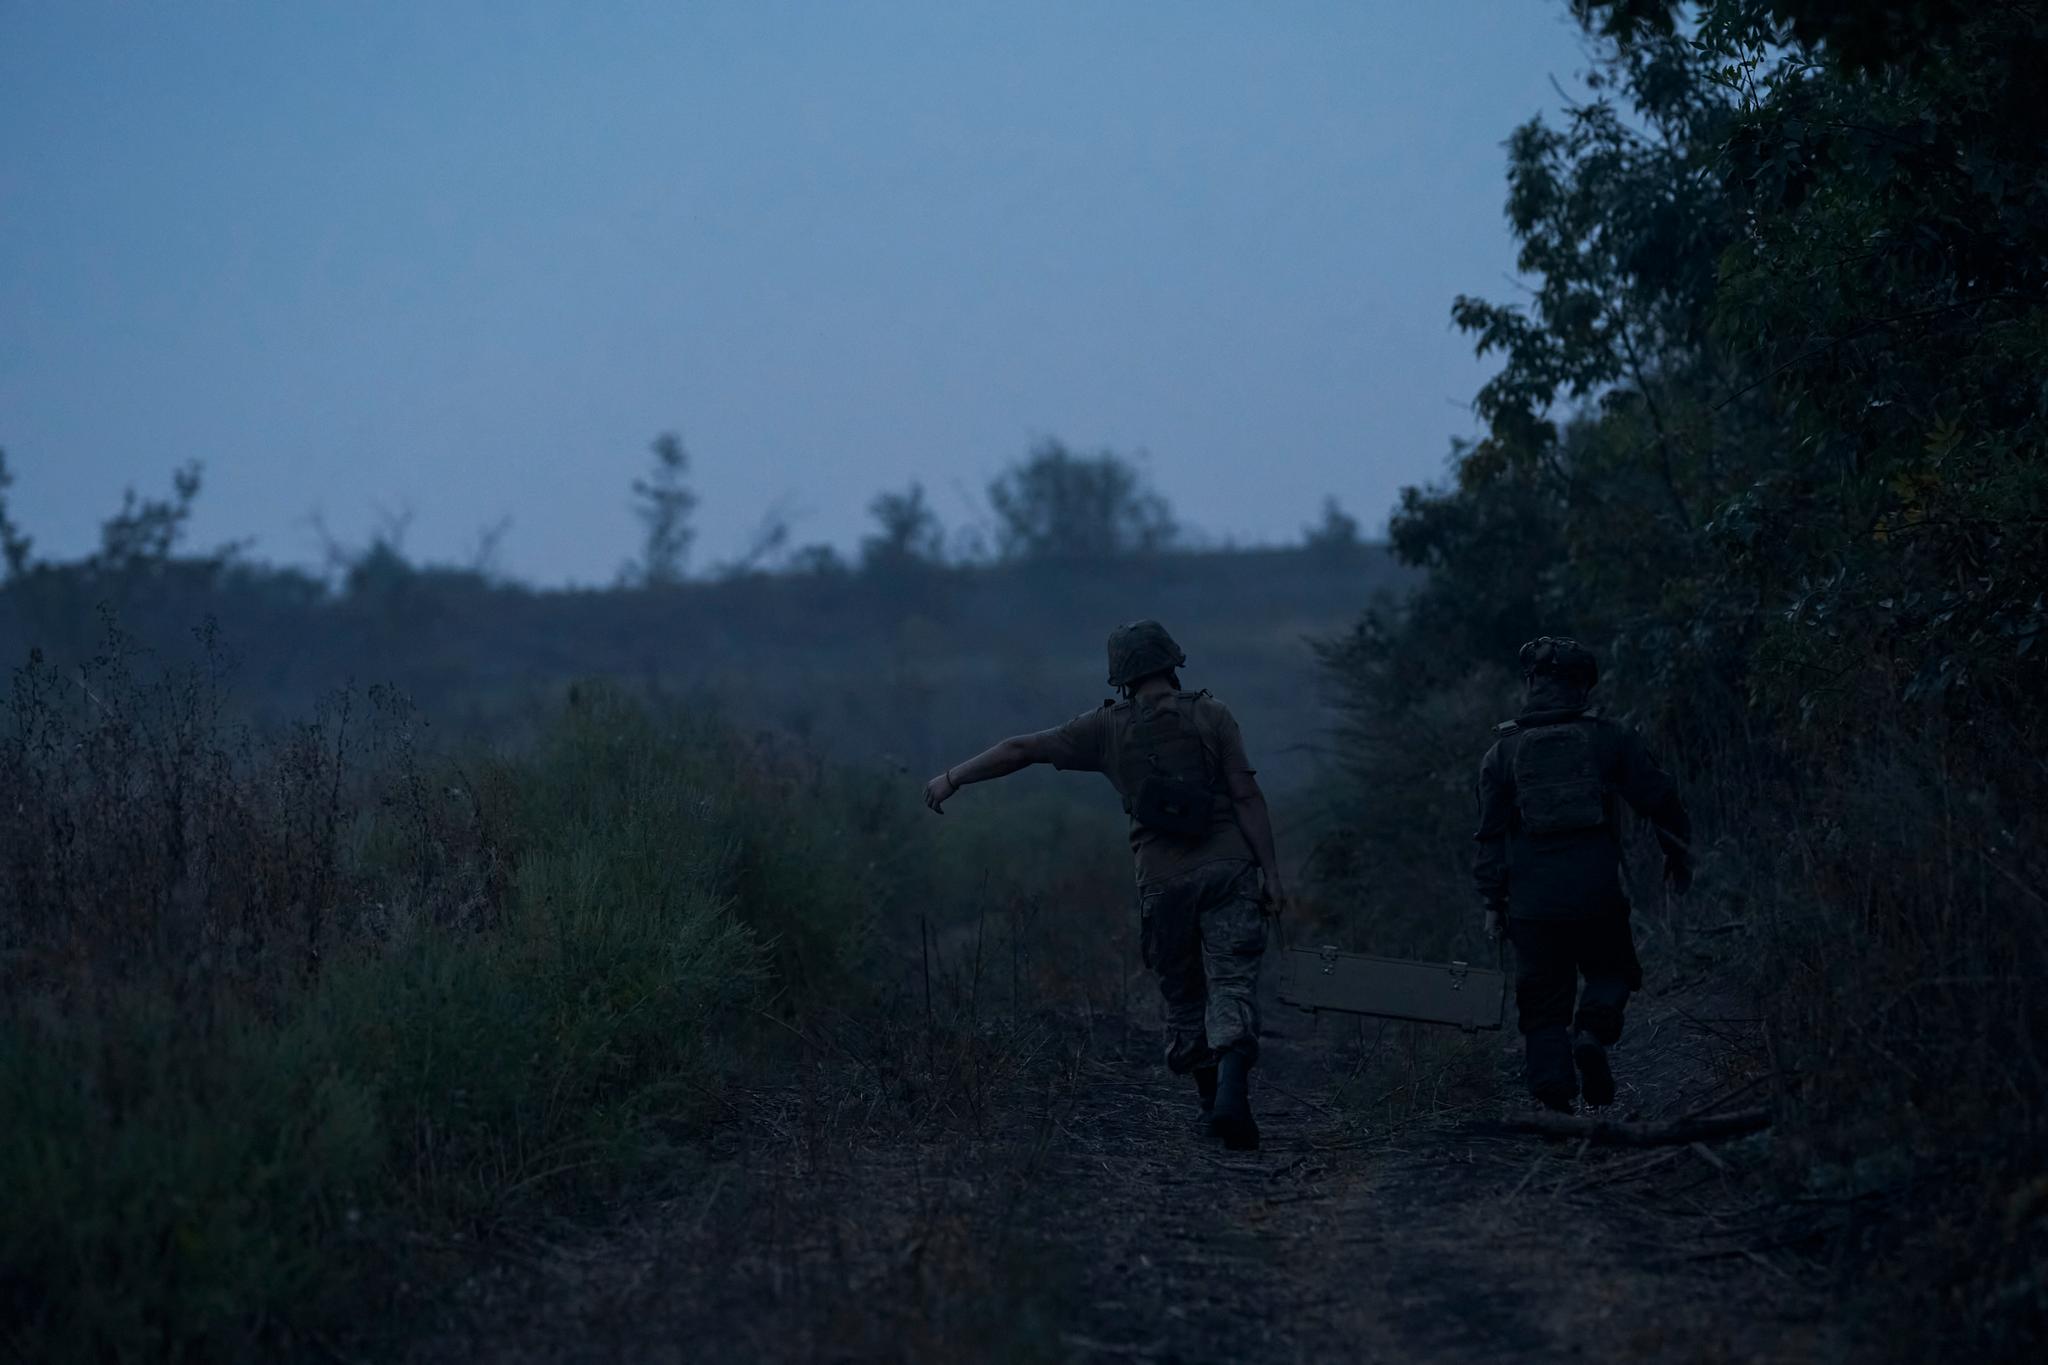 Varige ordninger og finansiering for etterforsyning av våpen til Ukraina må sikres, mener kronikkforfatteren. Bildet: Ukrainske soldater bærer ammunisjon nær frontlinjen i Bakhmut i Donetsk-regionen 2. september i år.